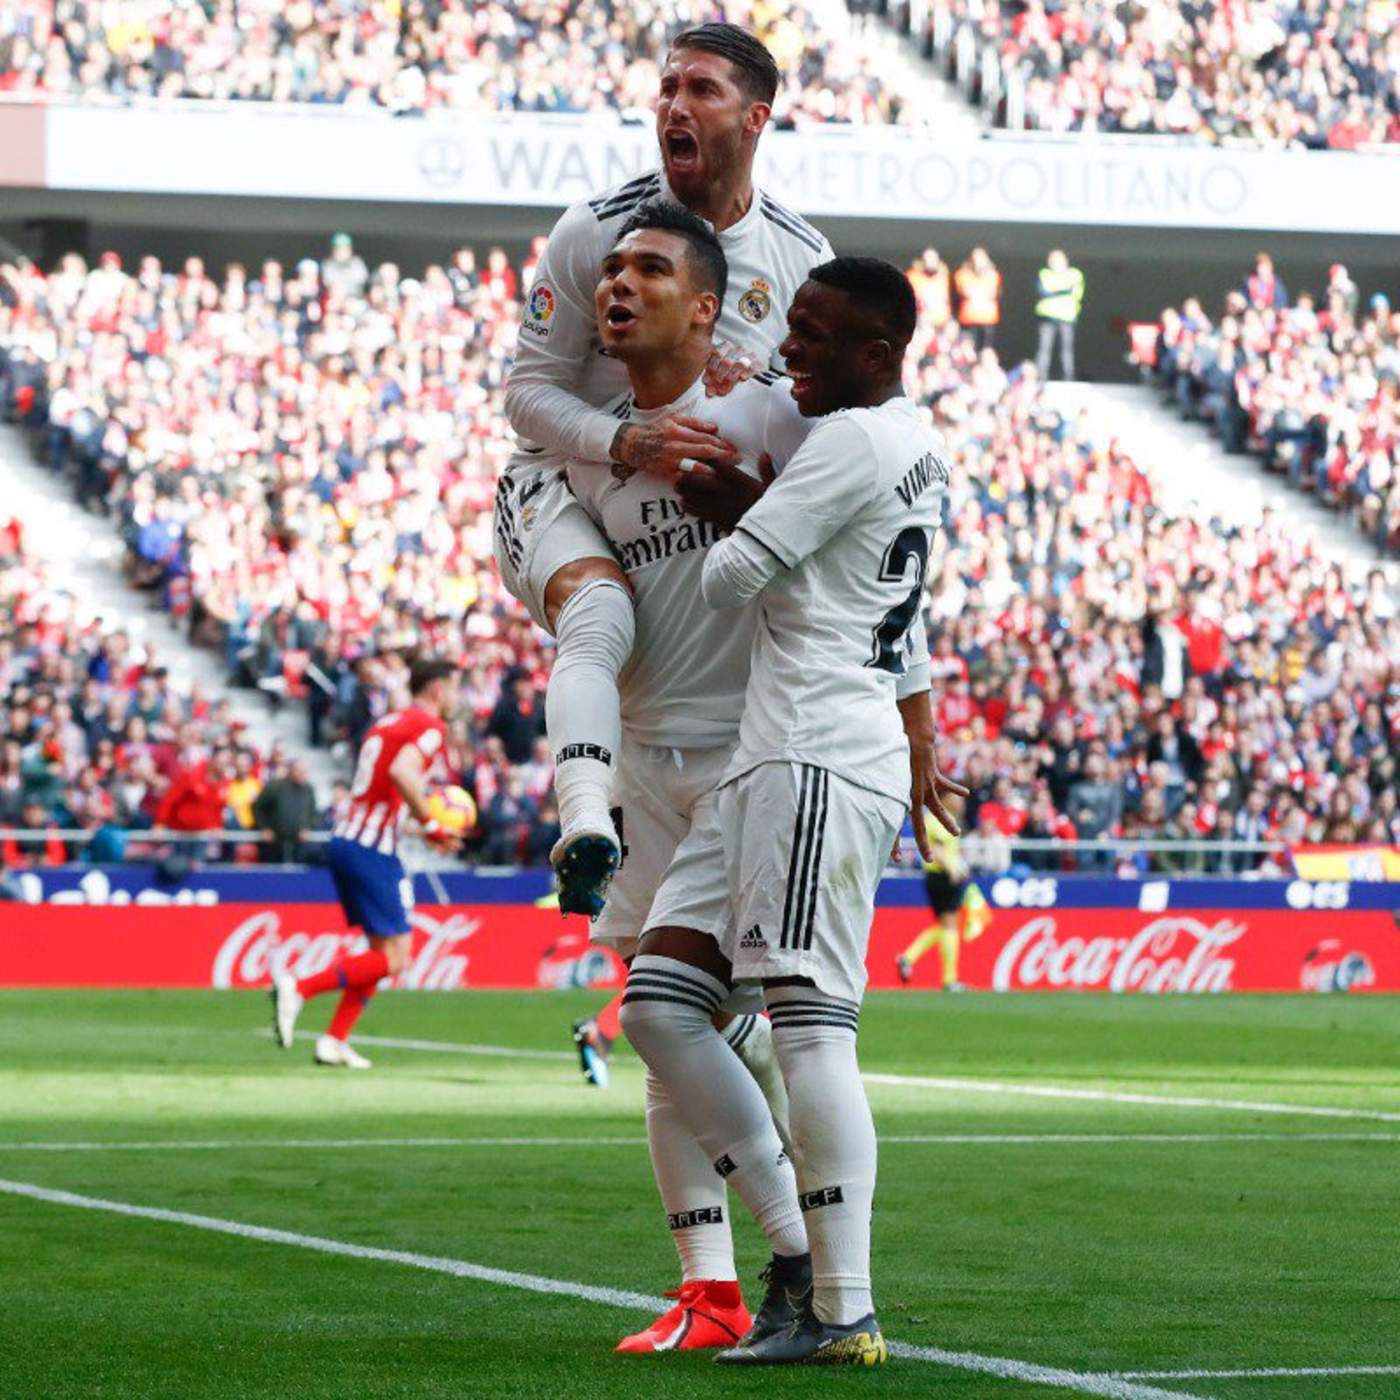 El Real Madrid recientemente ganó el derbi madrileño ante Atlético por marcador de 3-1. (Especial)